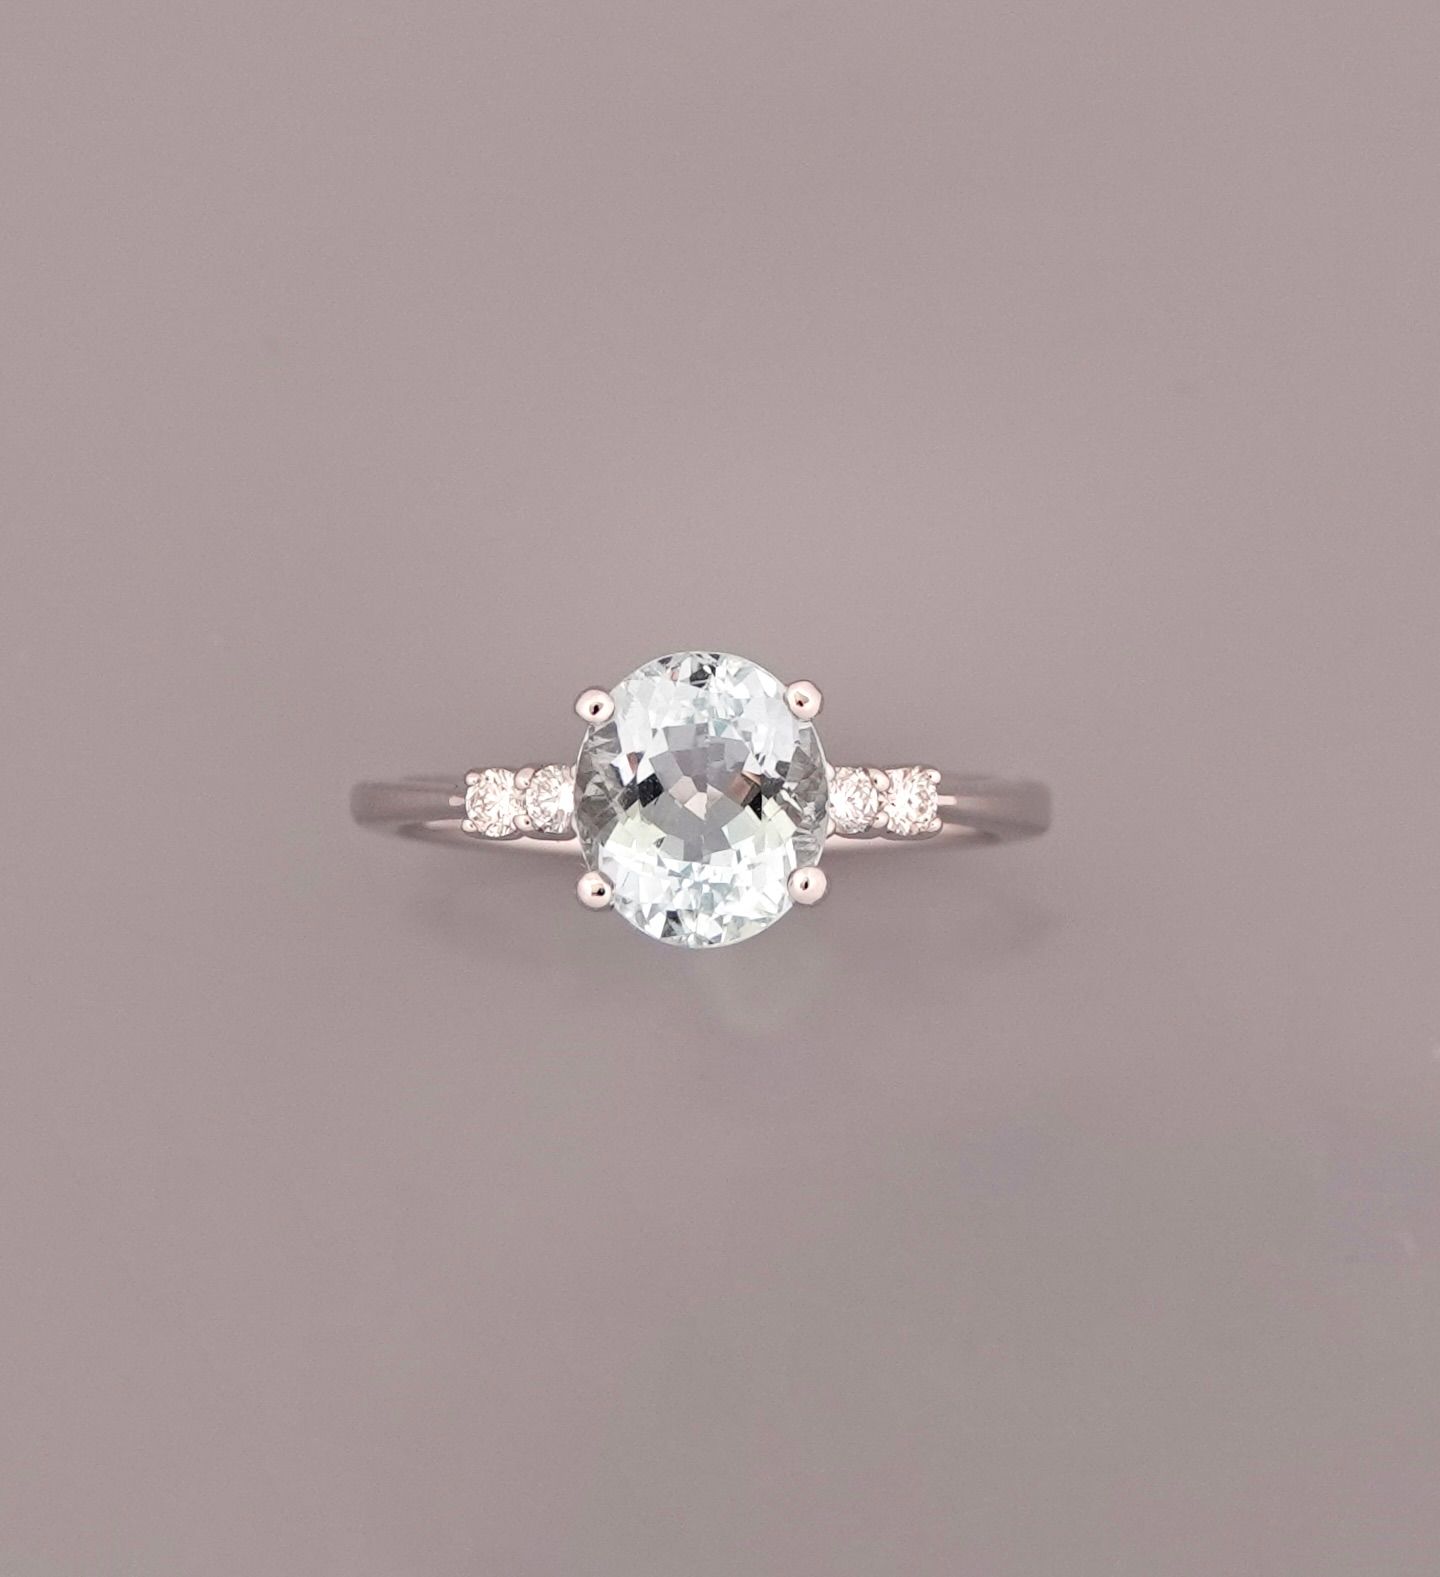 Null 一枚750毫米白金戒指，镶嵌着一颗重1.66克拉的椭圆形海蓝宝石和四颗钻石，尺寸为53/54，总重2.75克。